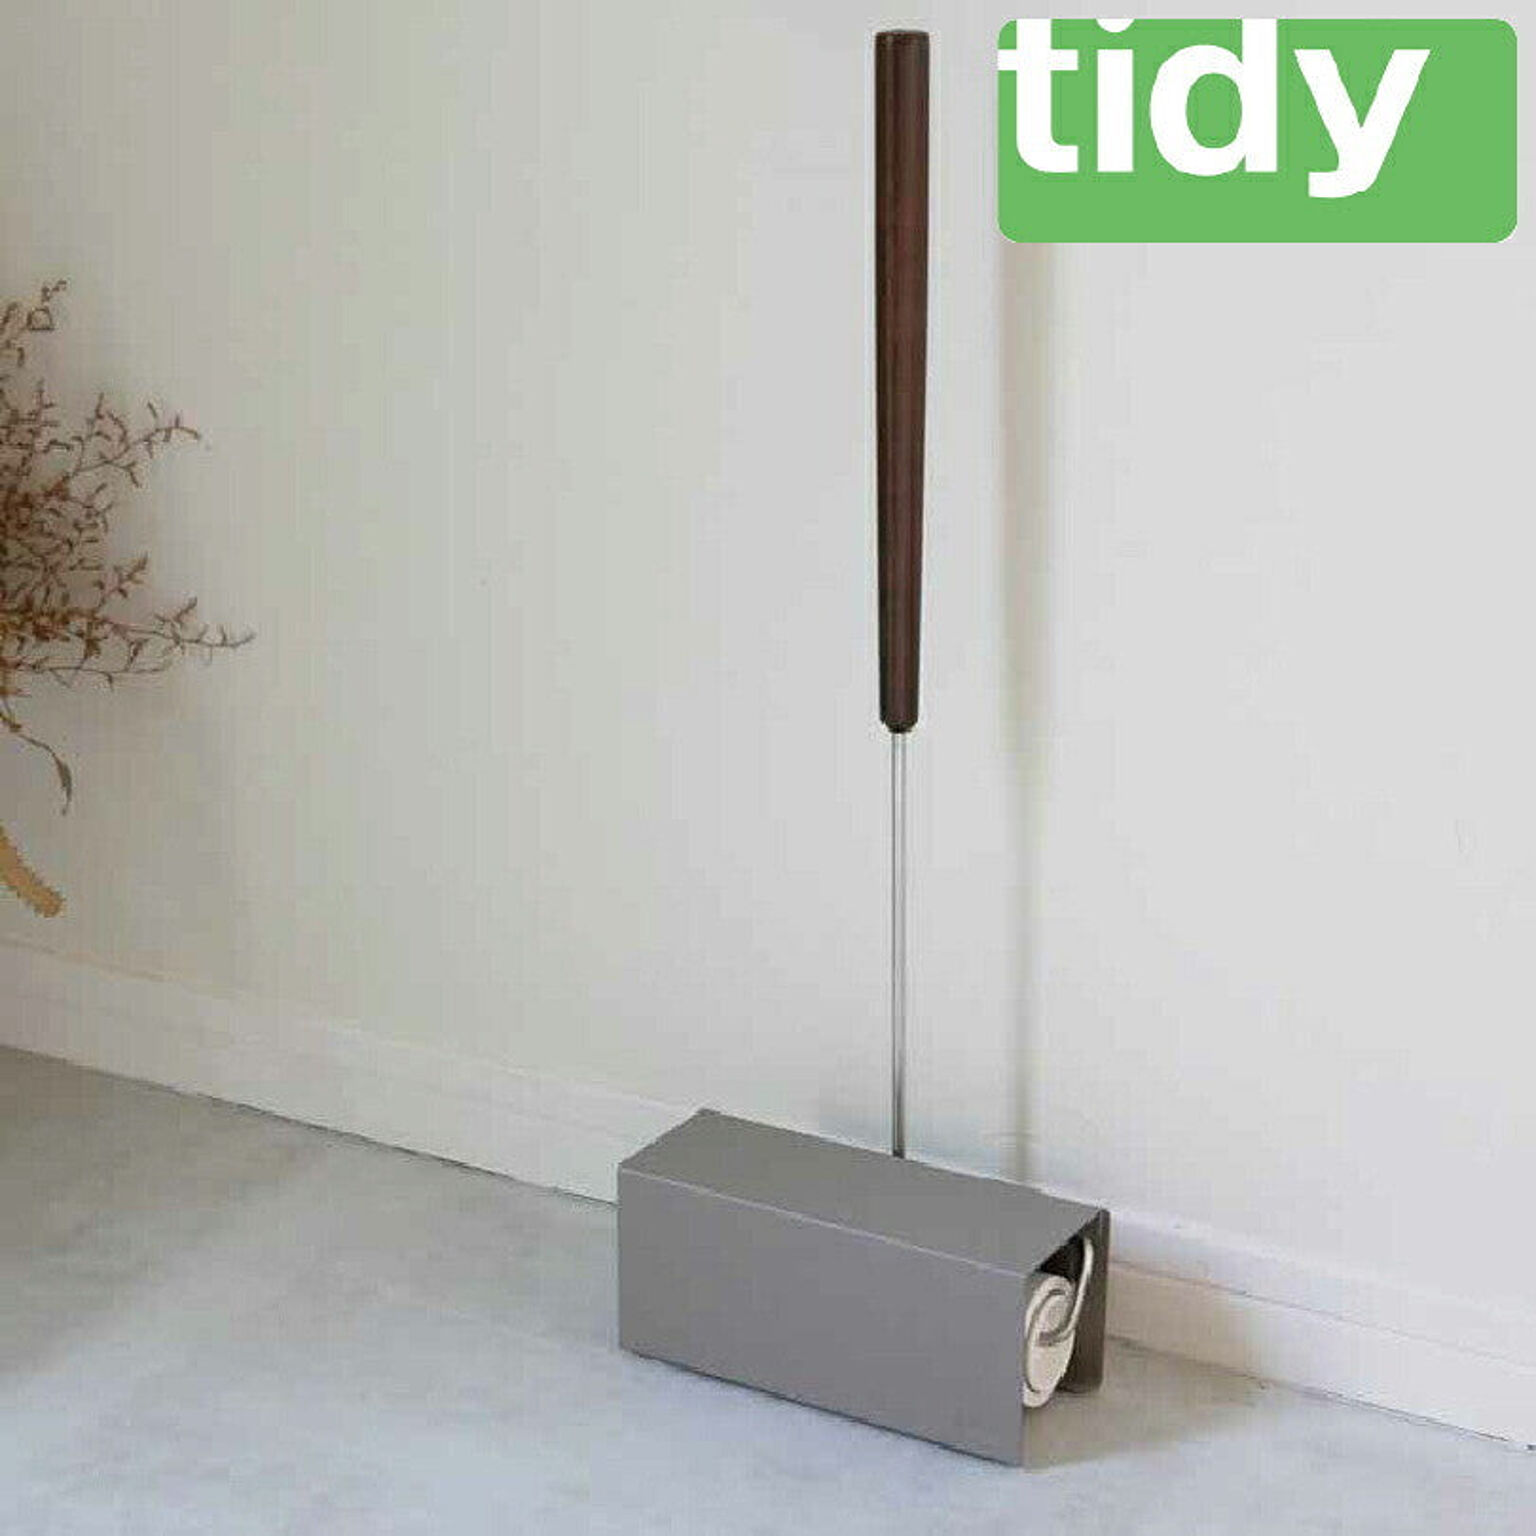 【ティディー】【tidy】ロールクリーナースタンド ブラウン